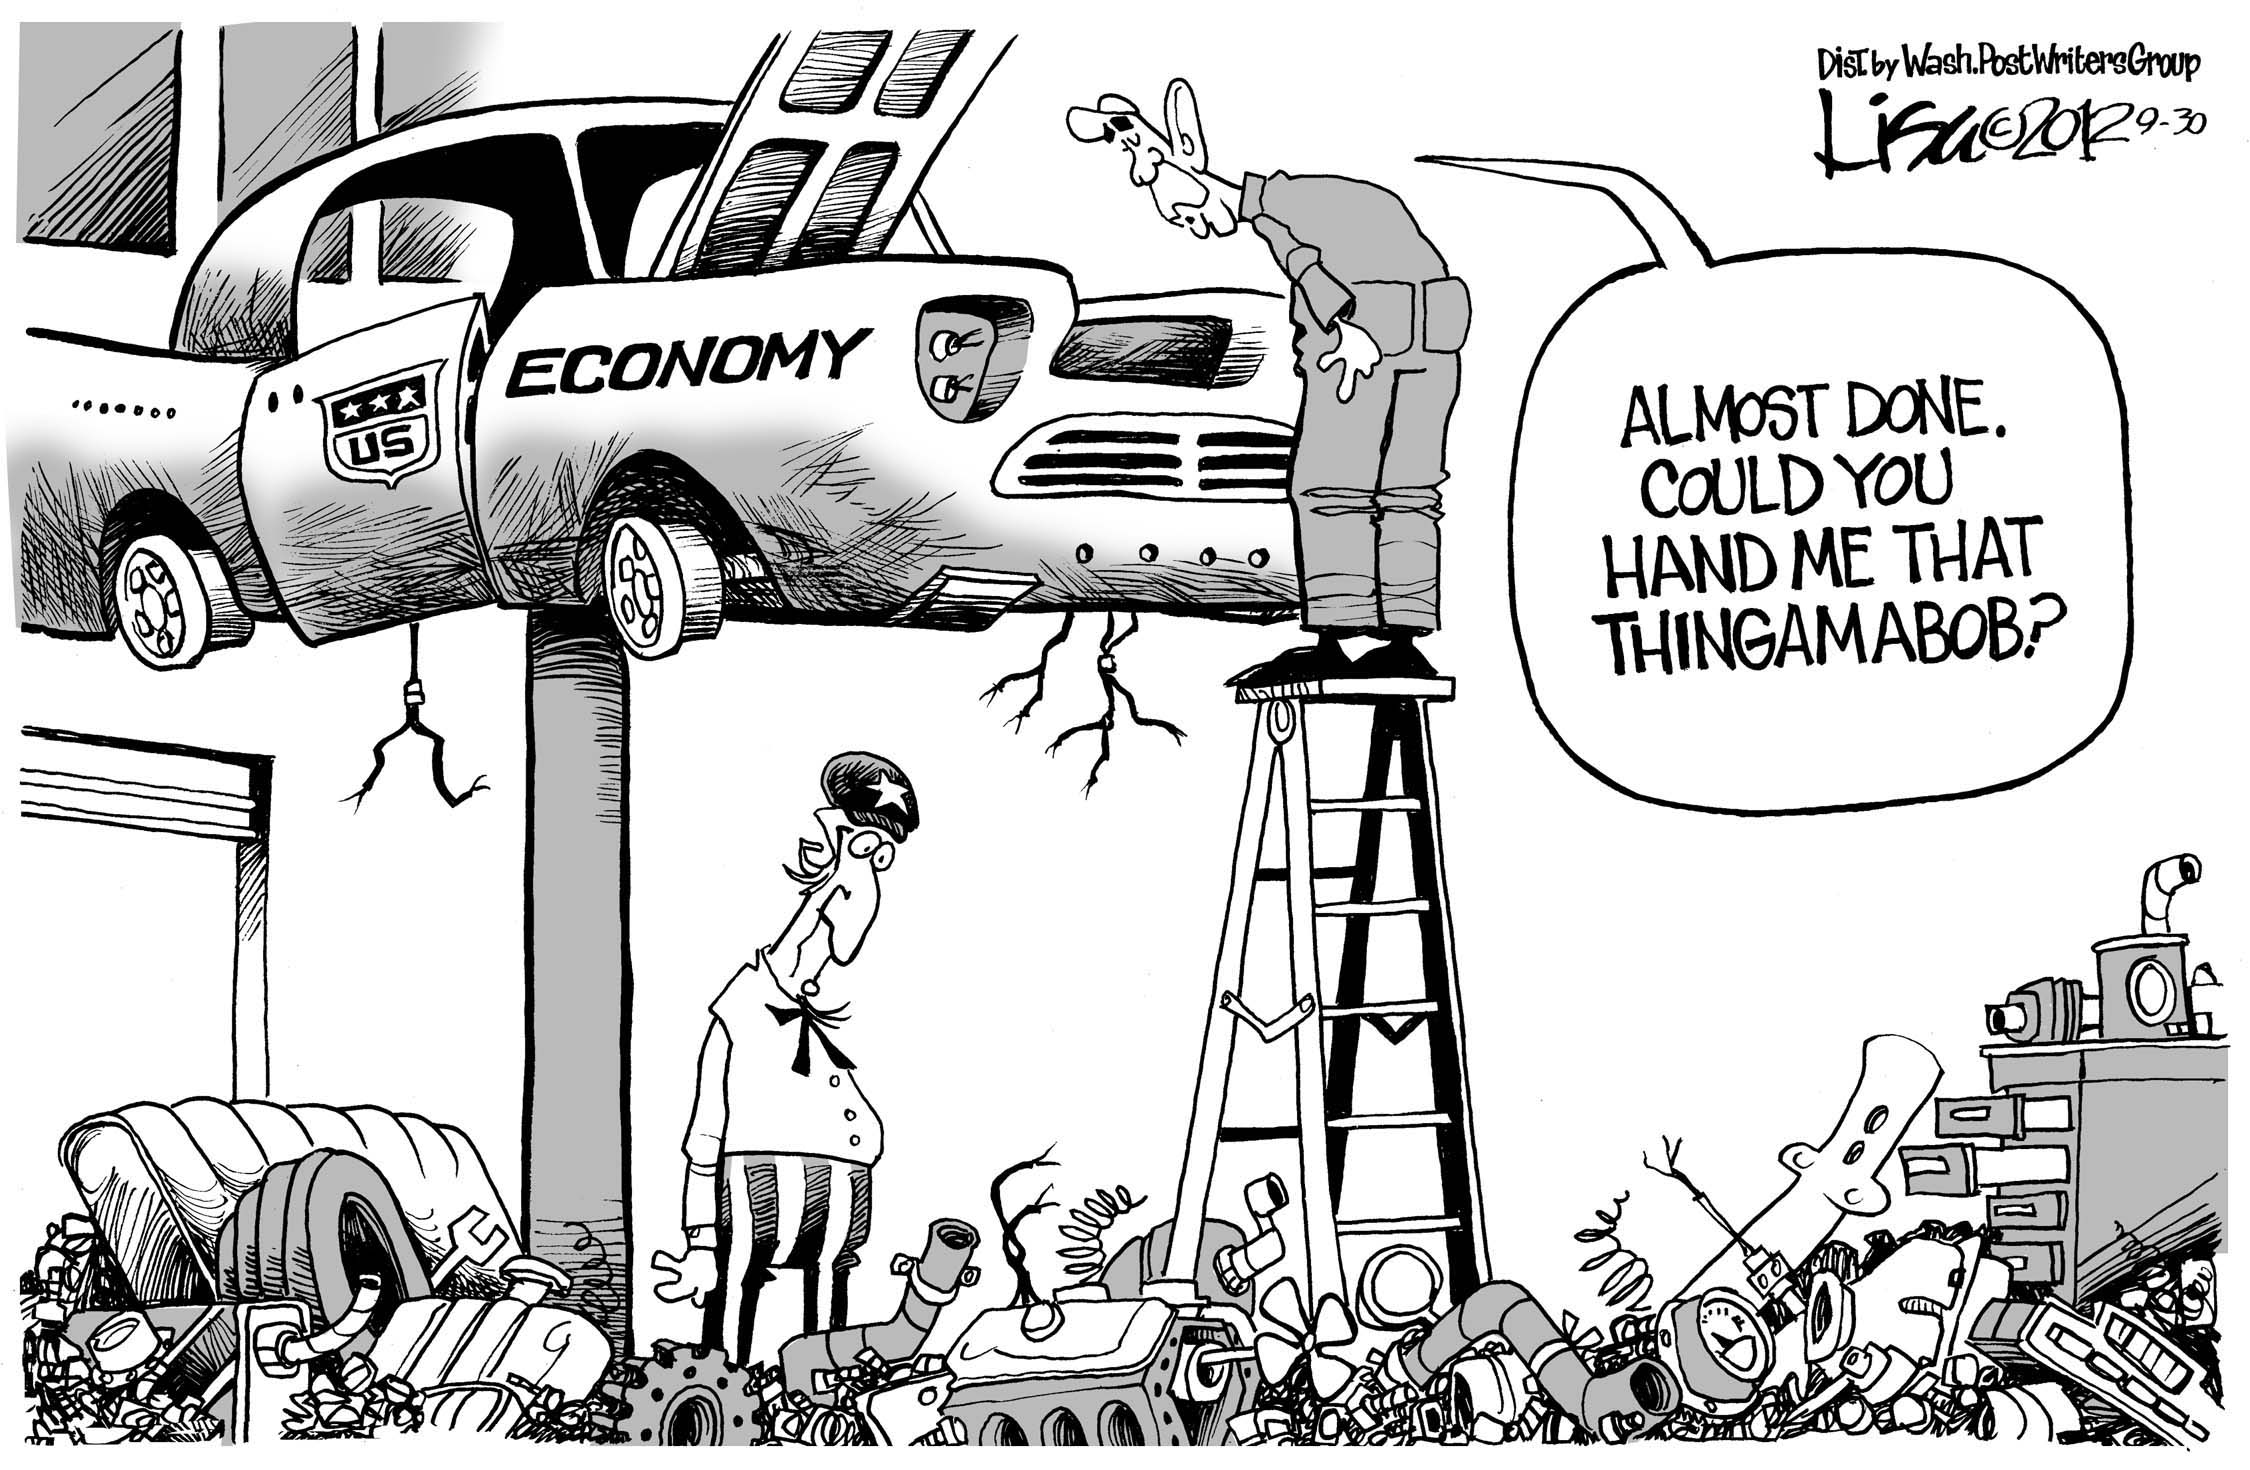 Fixing the economy